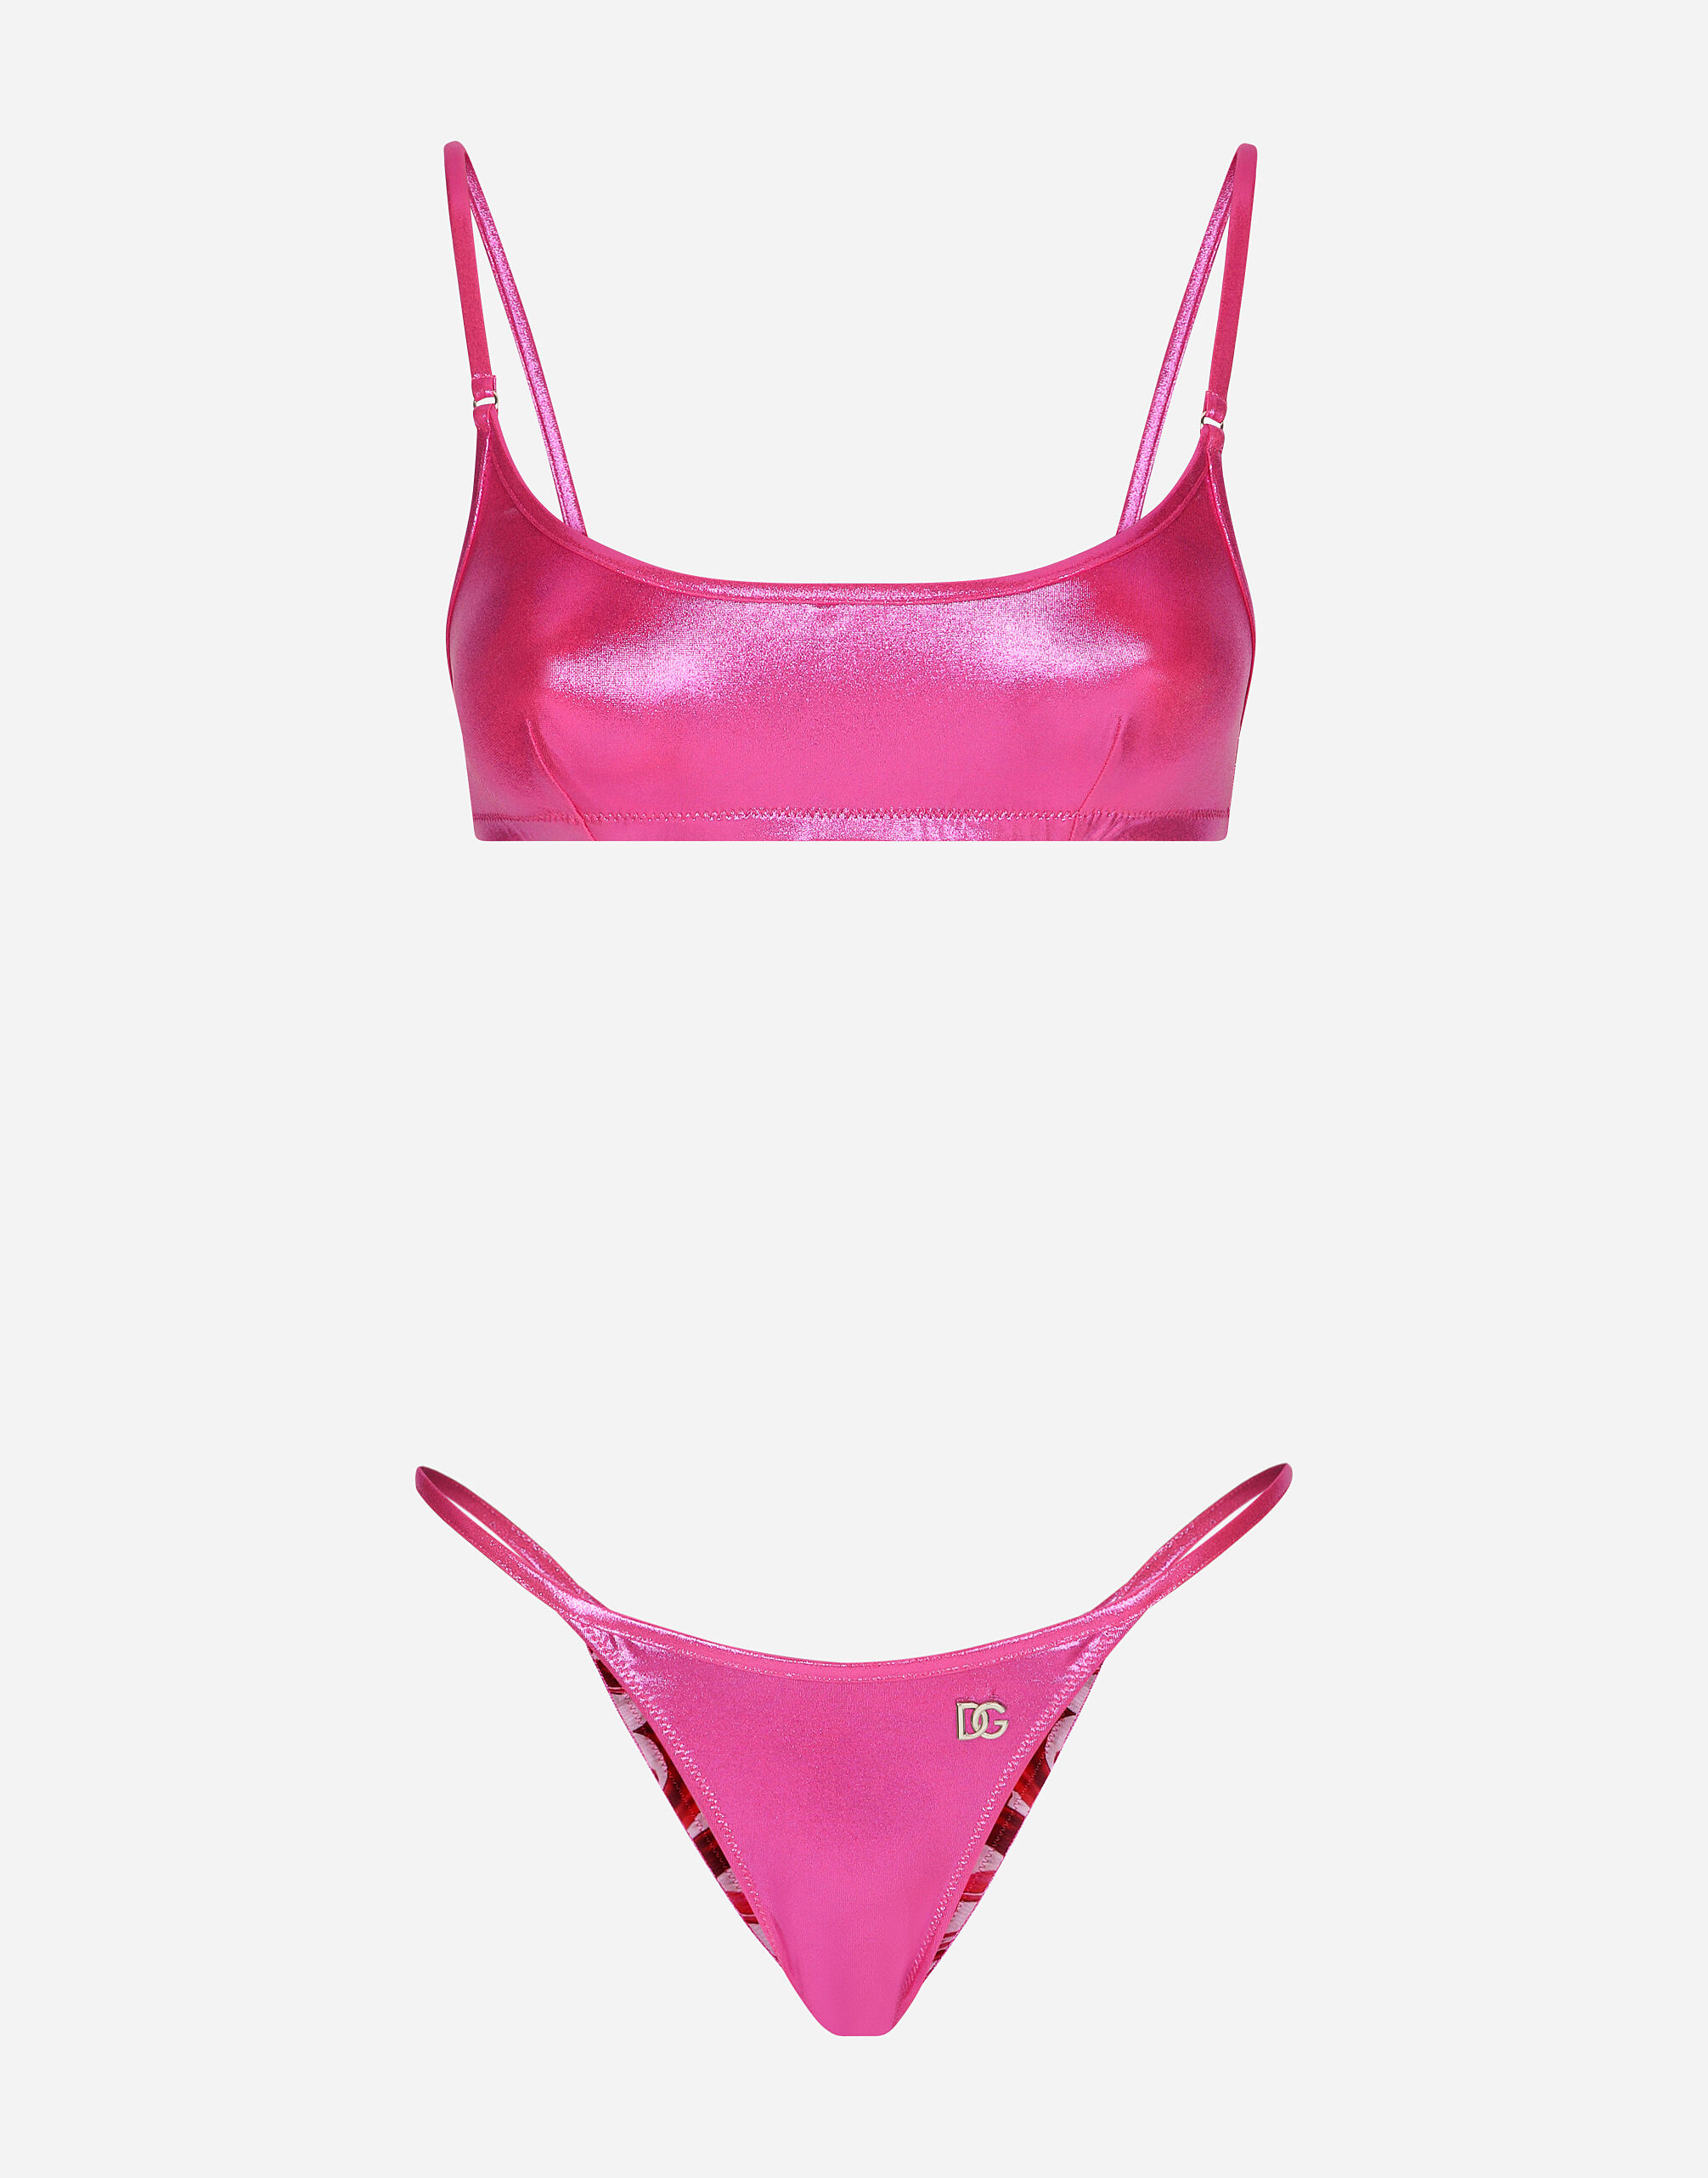 Dolce & Gabbana Laminated bralette bikini top Pink F79DATFMMHN